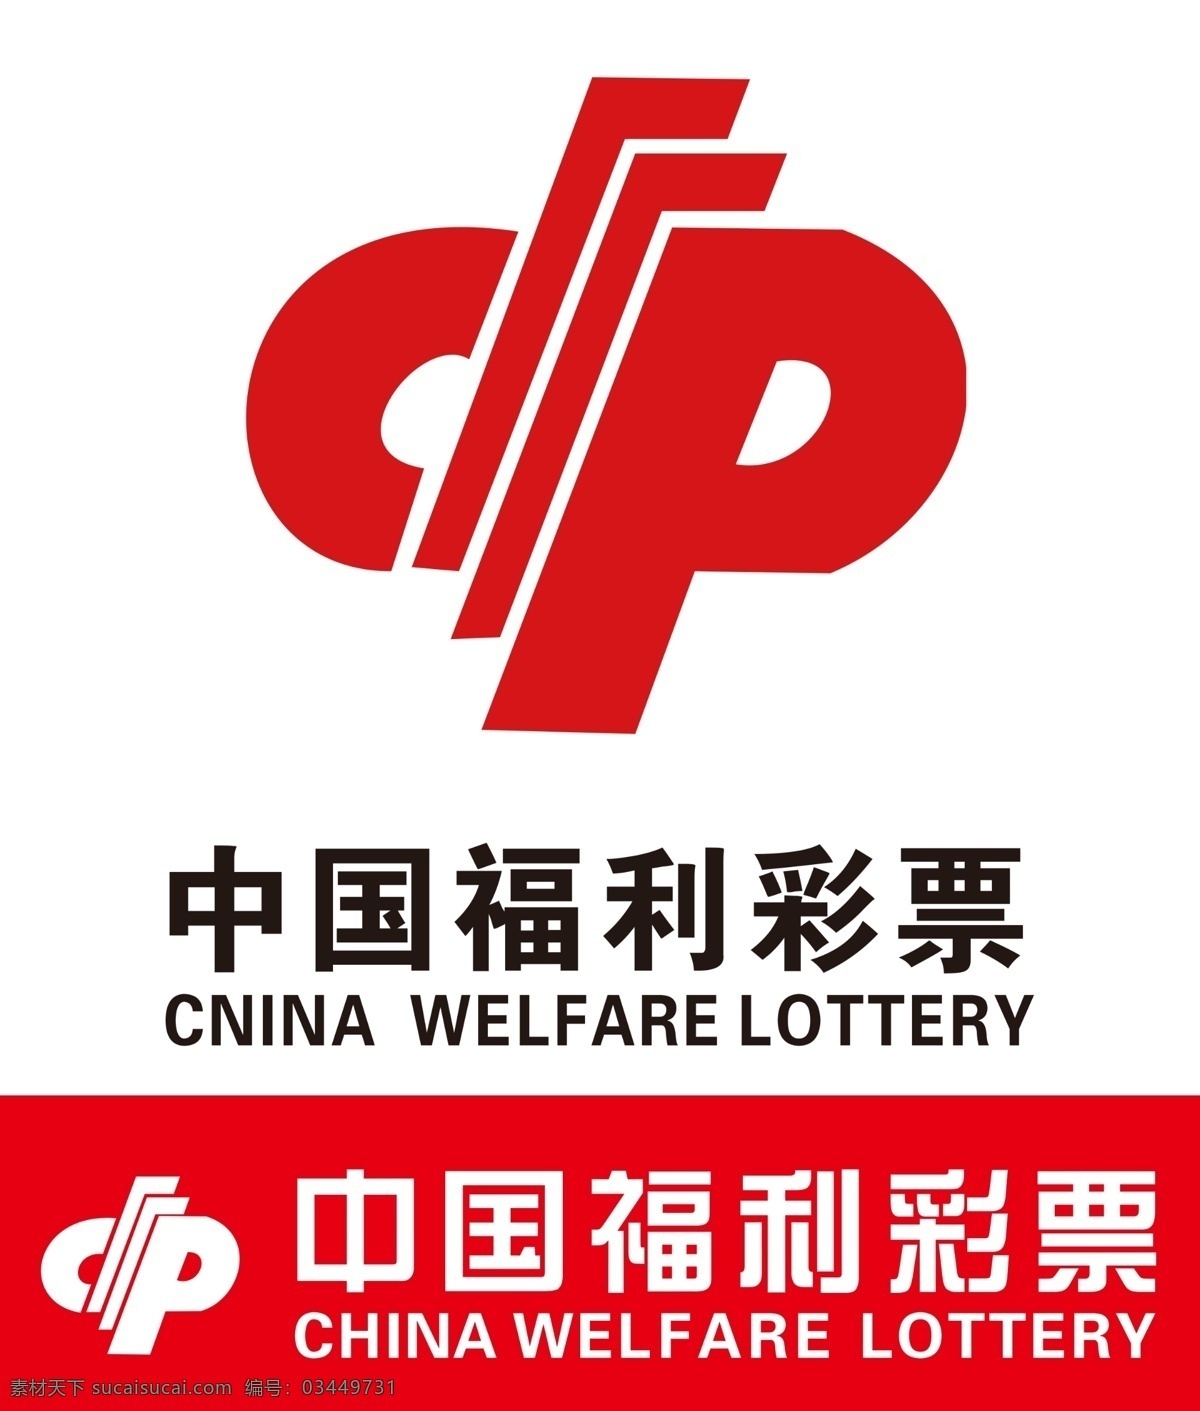 中国福利彩票 中国福利标志 彩票标志 彩票 中国彩票 福利彩票标志 福利彩票 logo